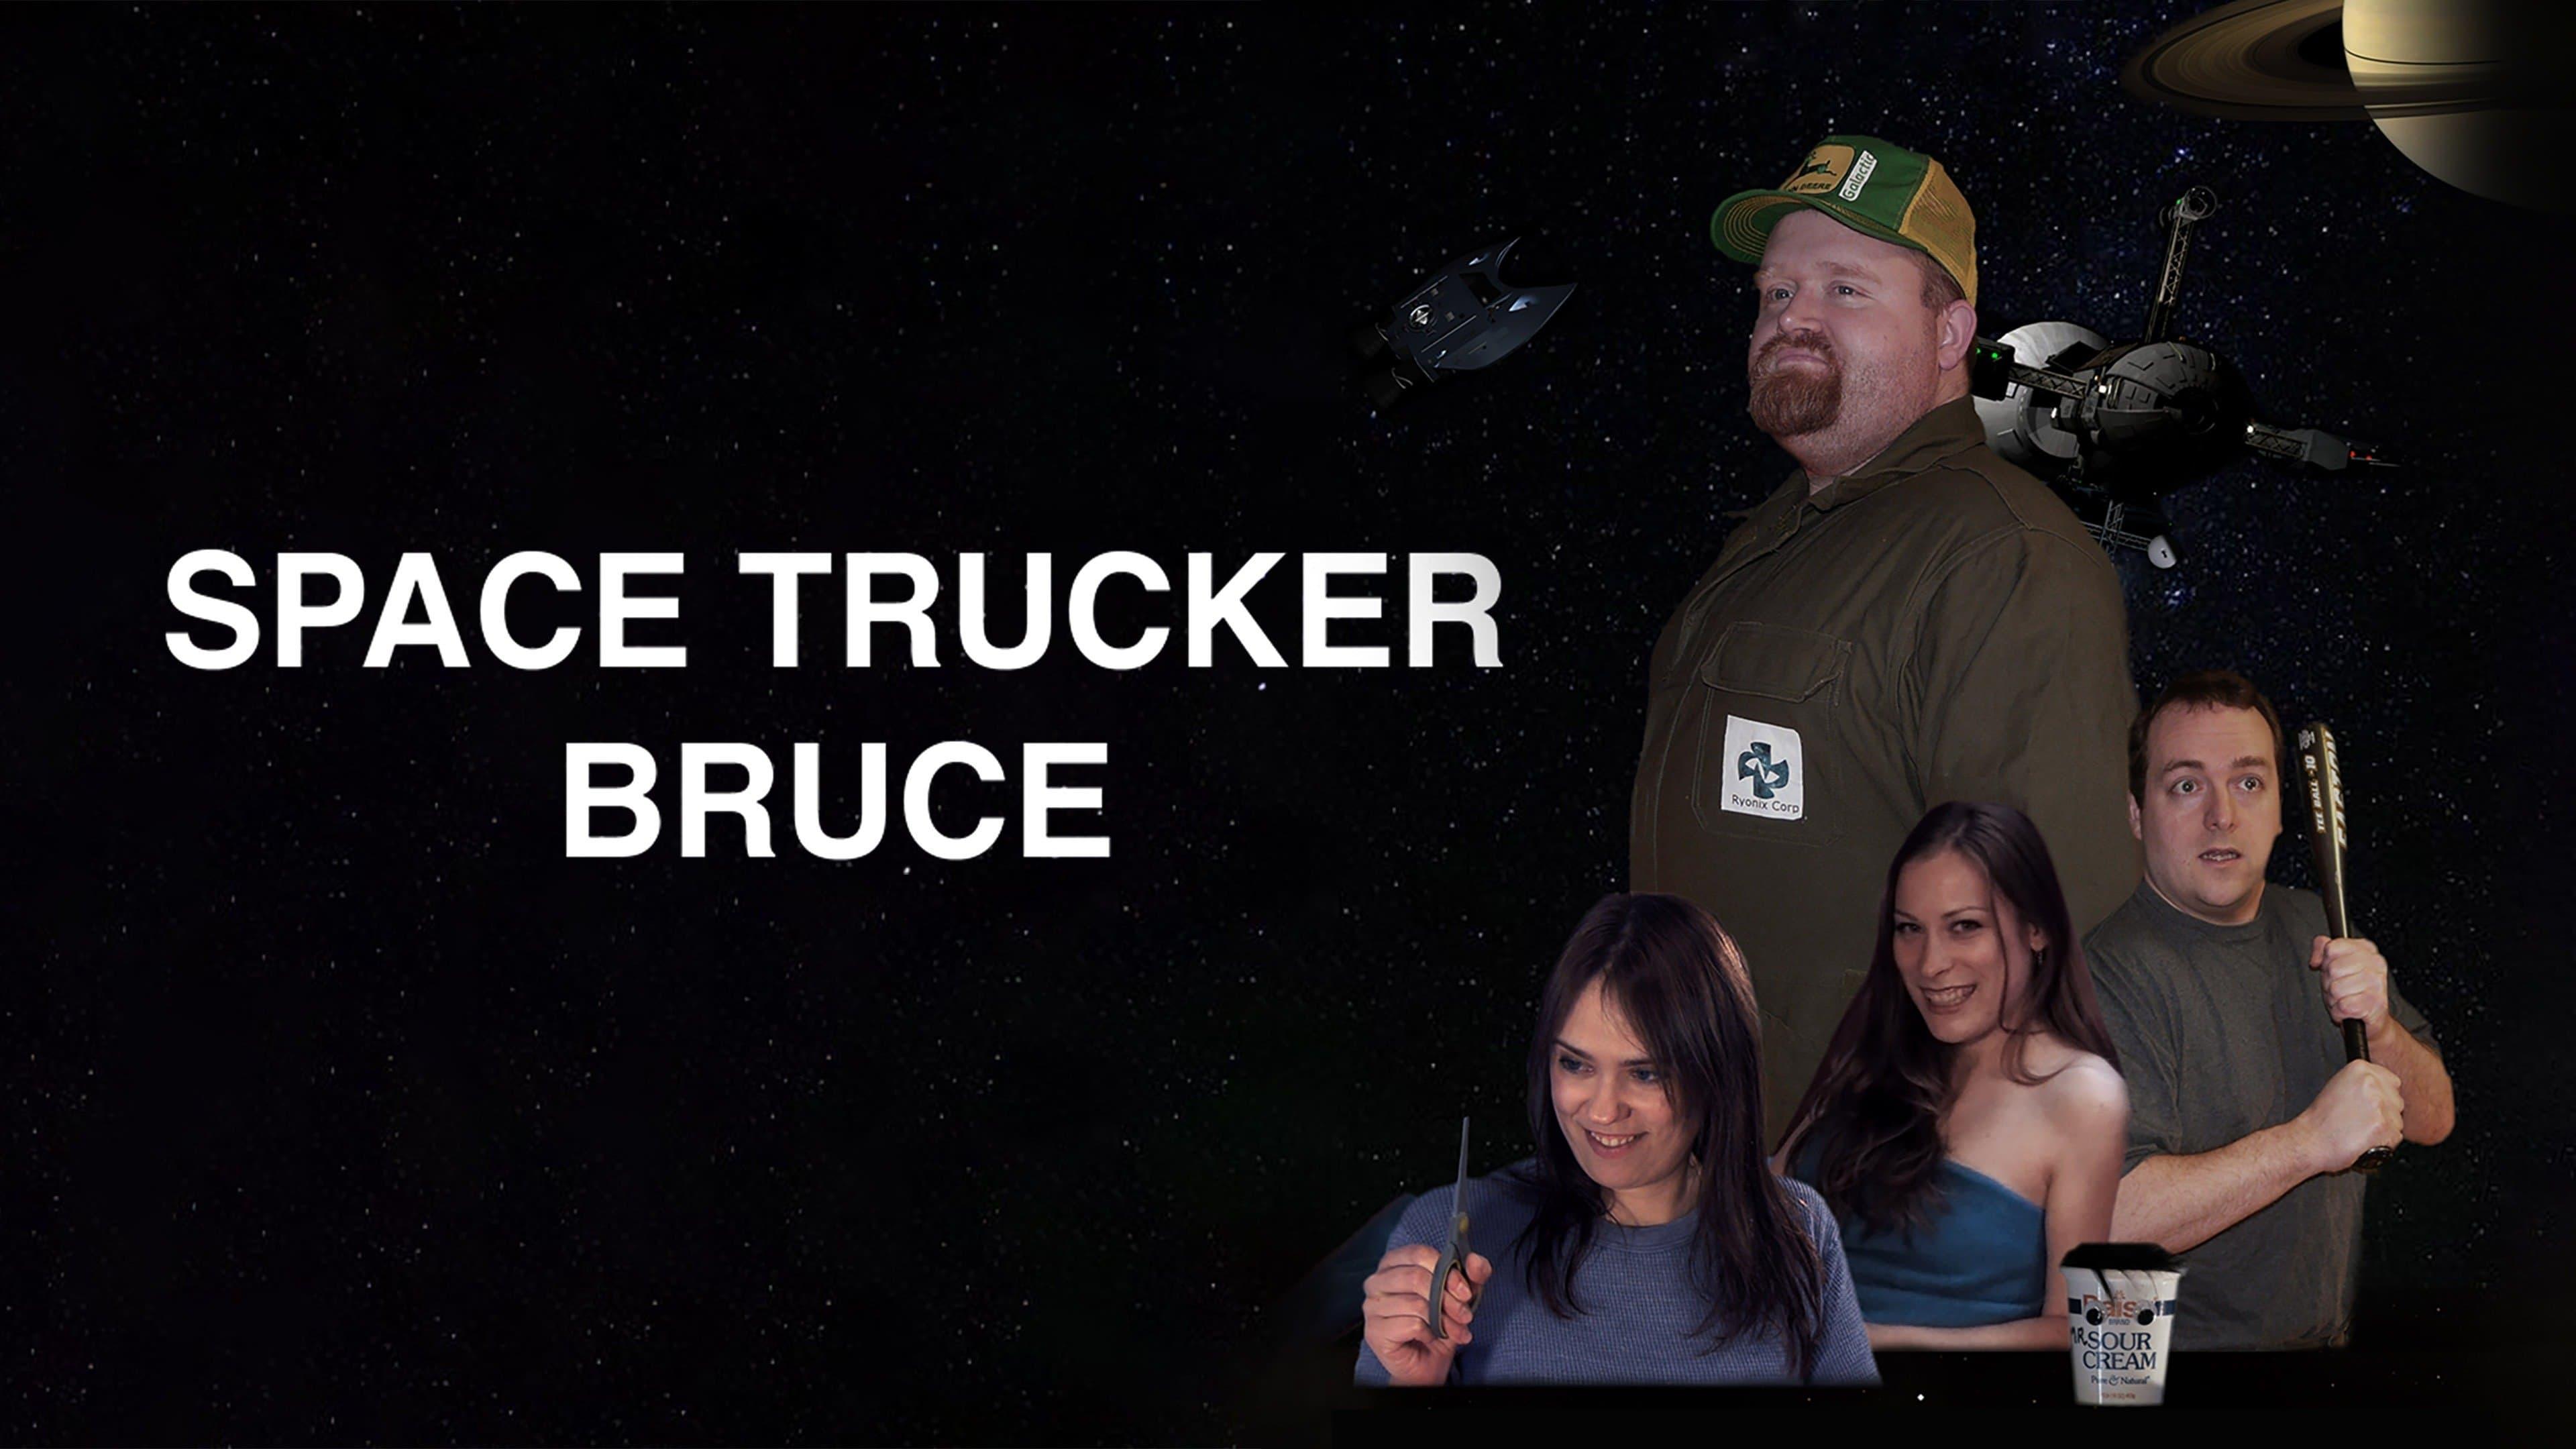 Space Trucker Bruce backdrop